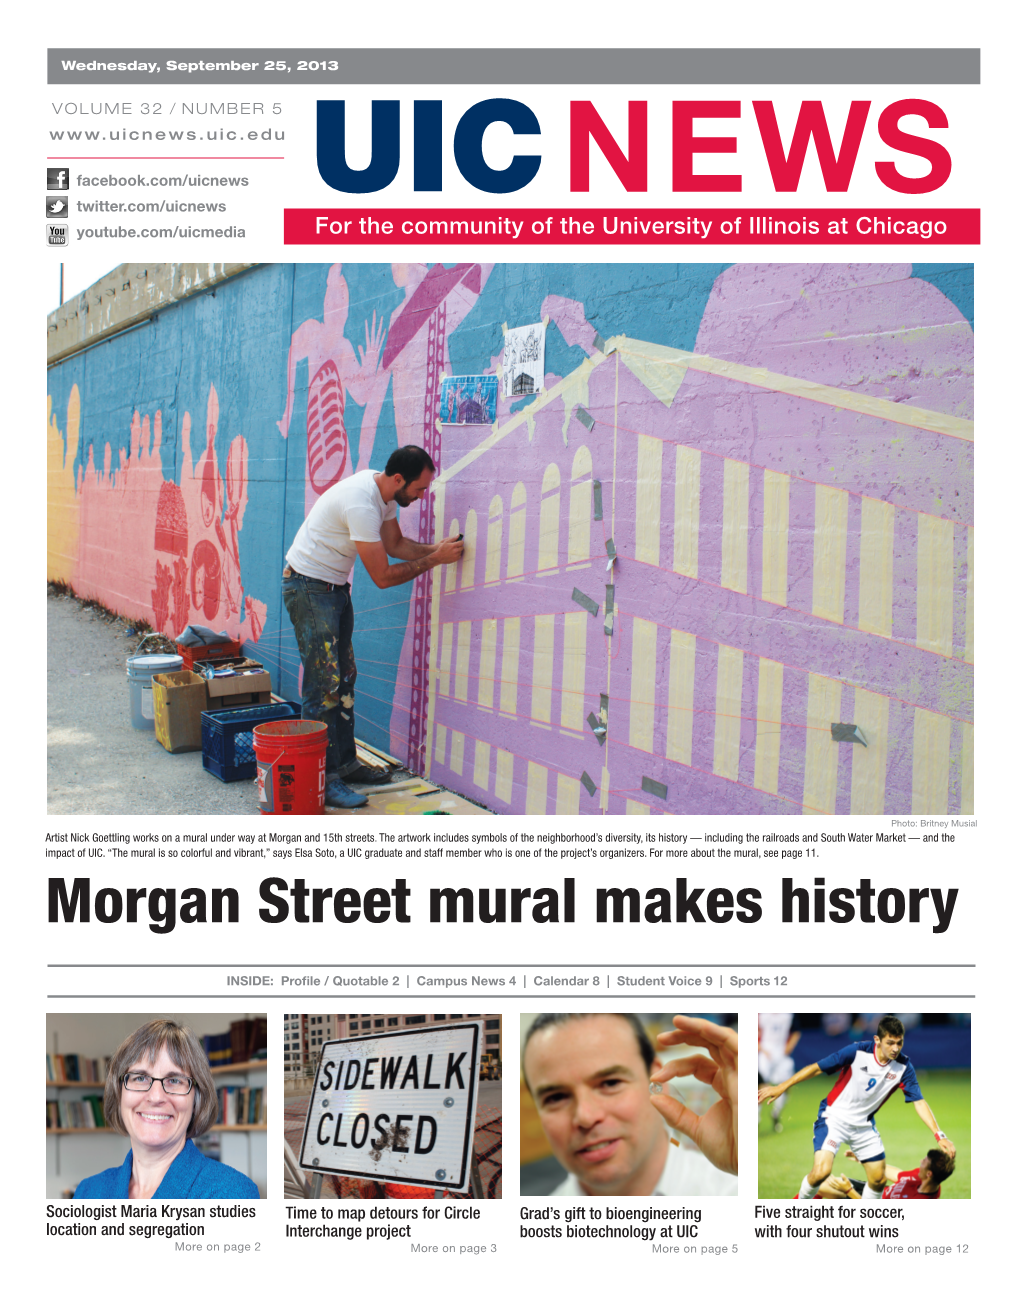 Morgan Street Mural Makes History